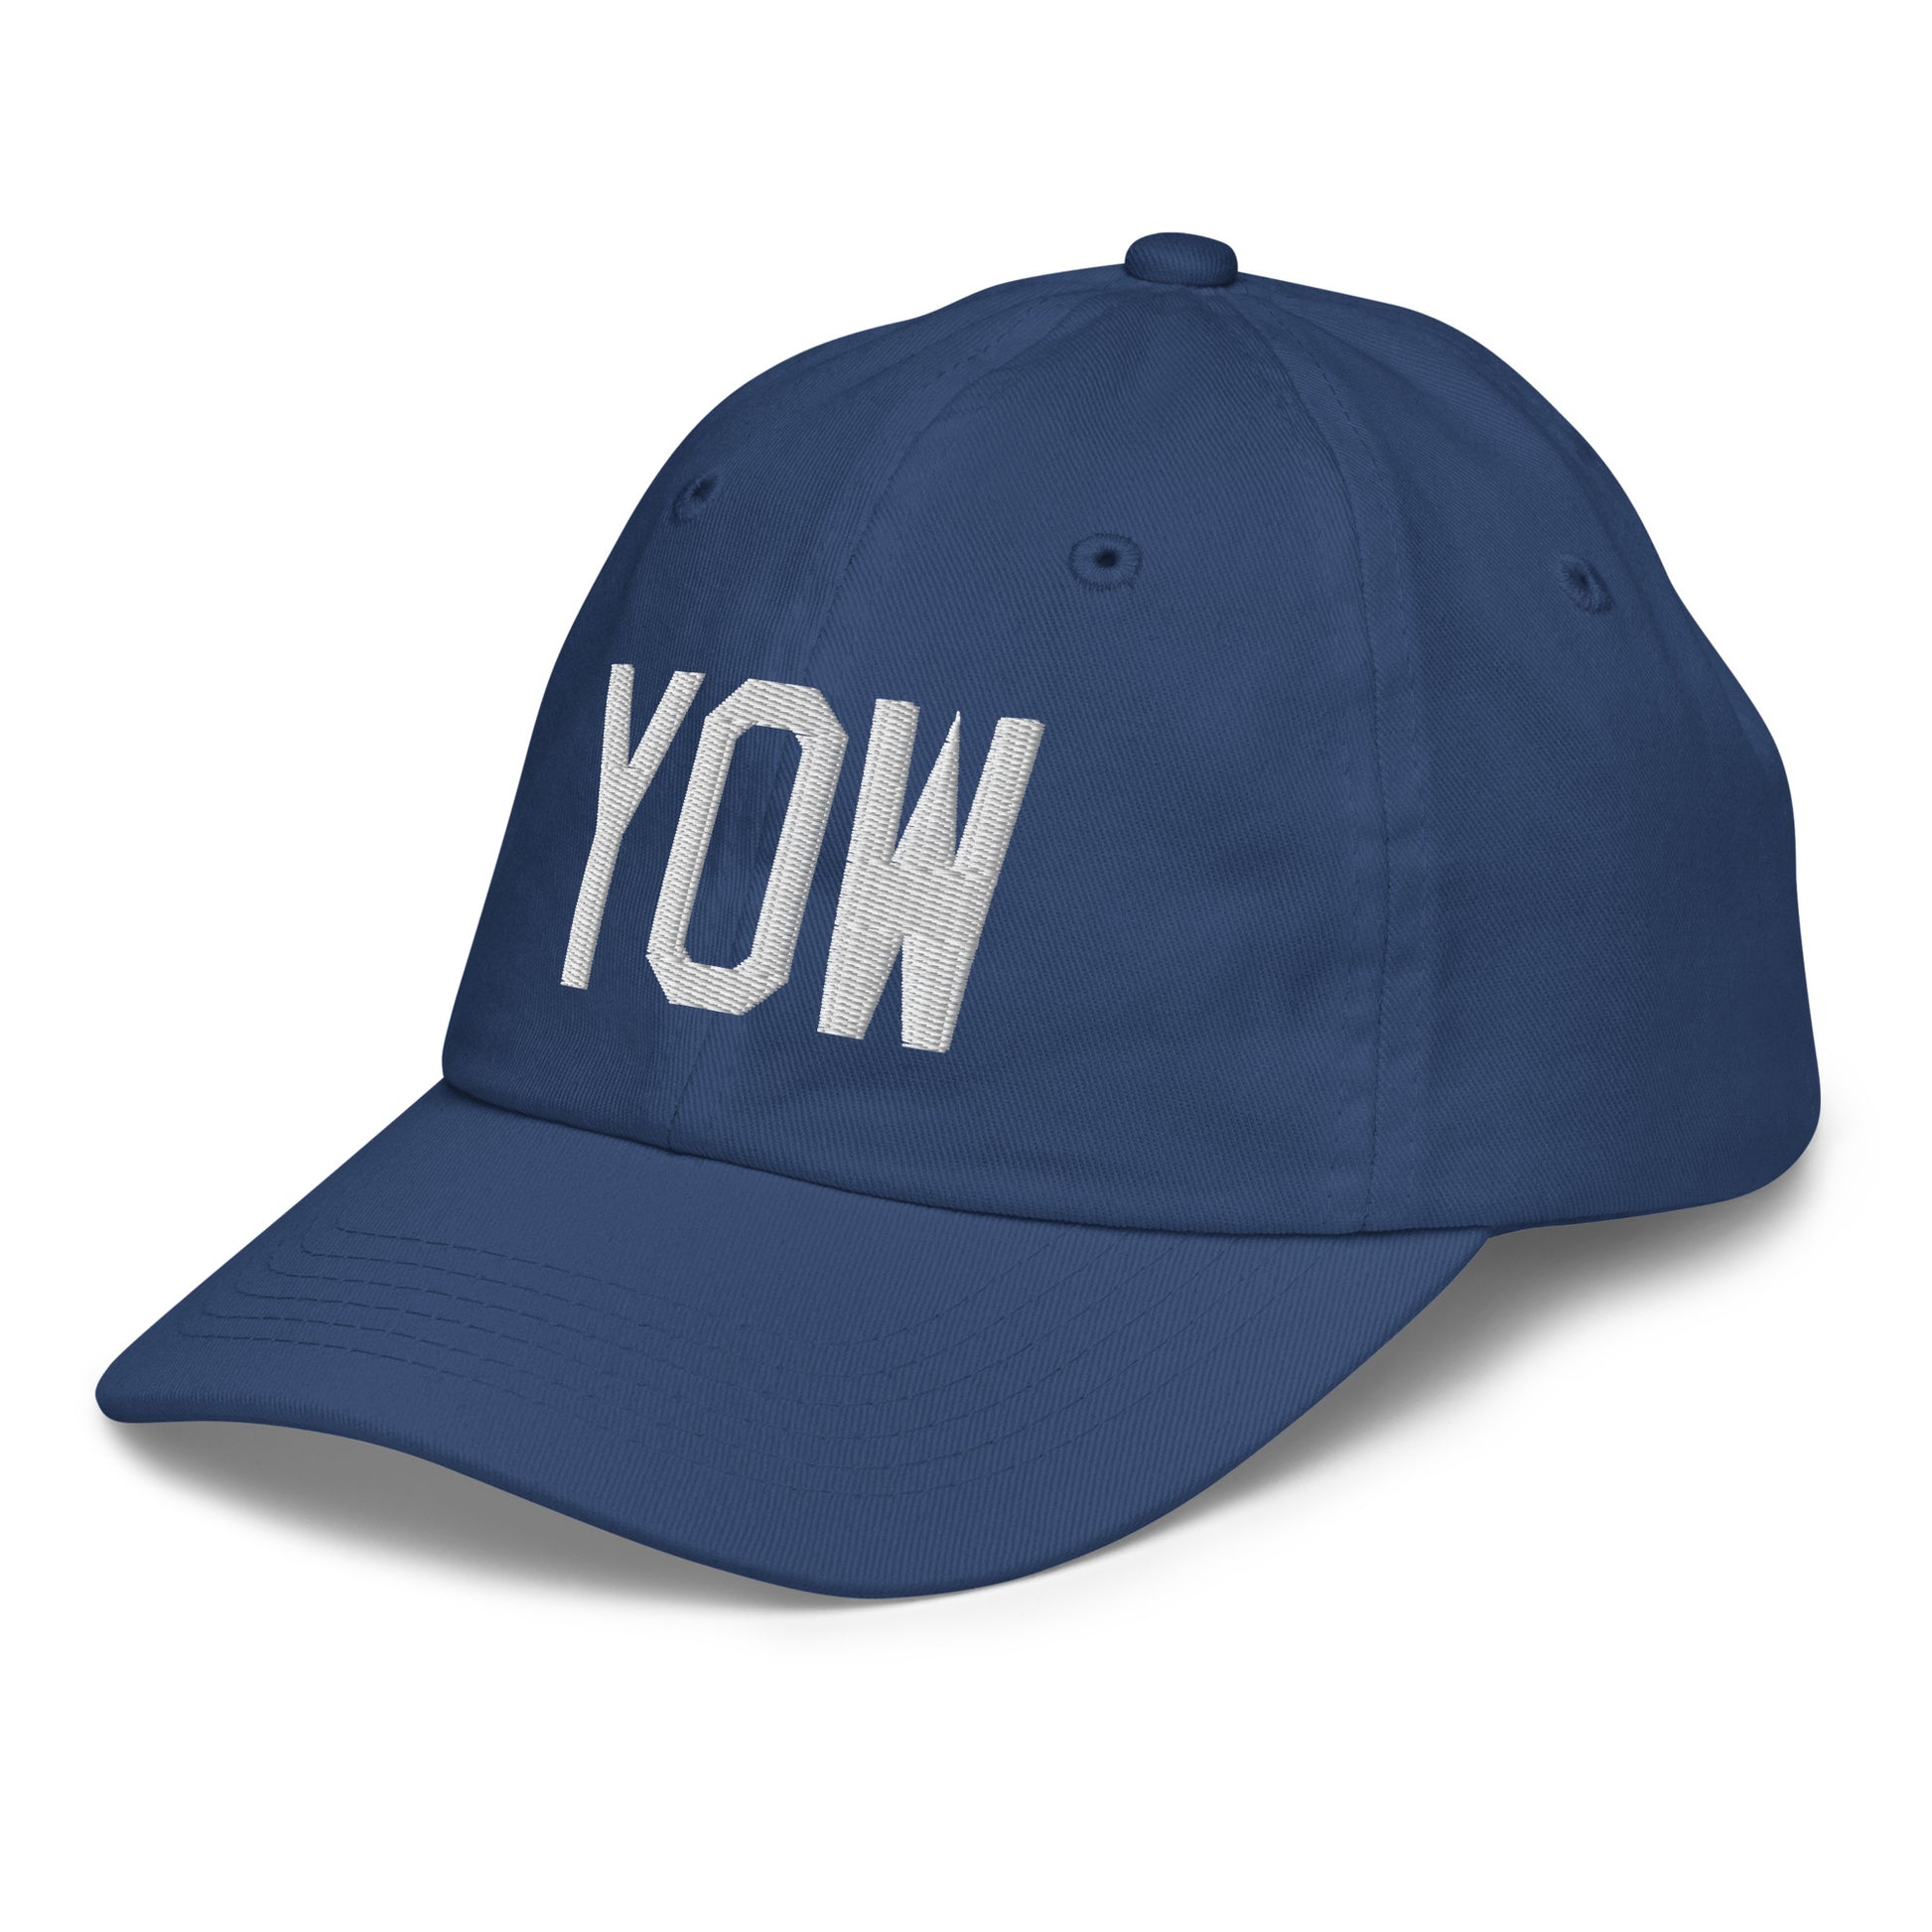 Airport Code Kid's Baseball Cap - White • YOW Ottawa • YHM Designs - Image 01